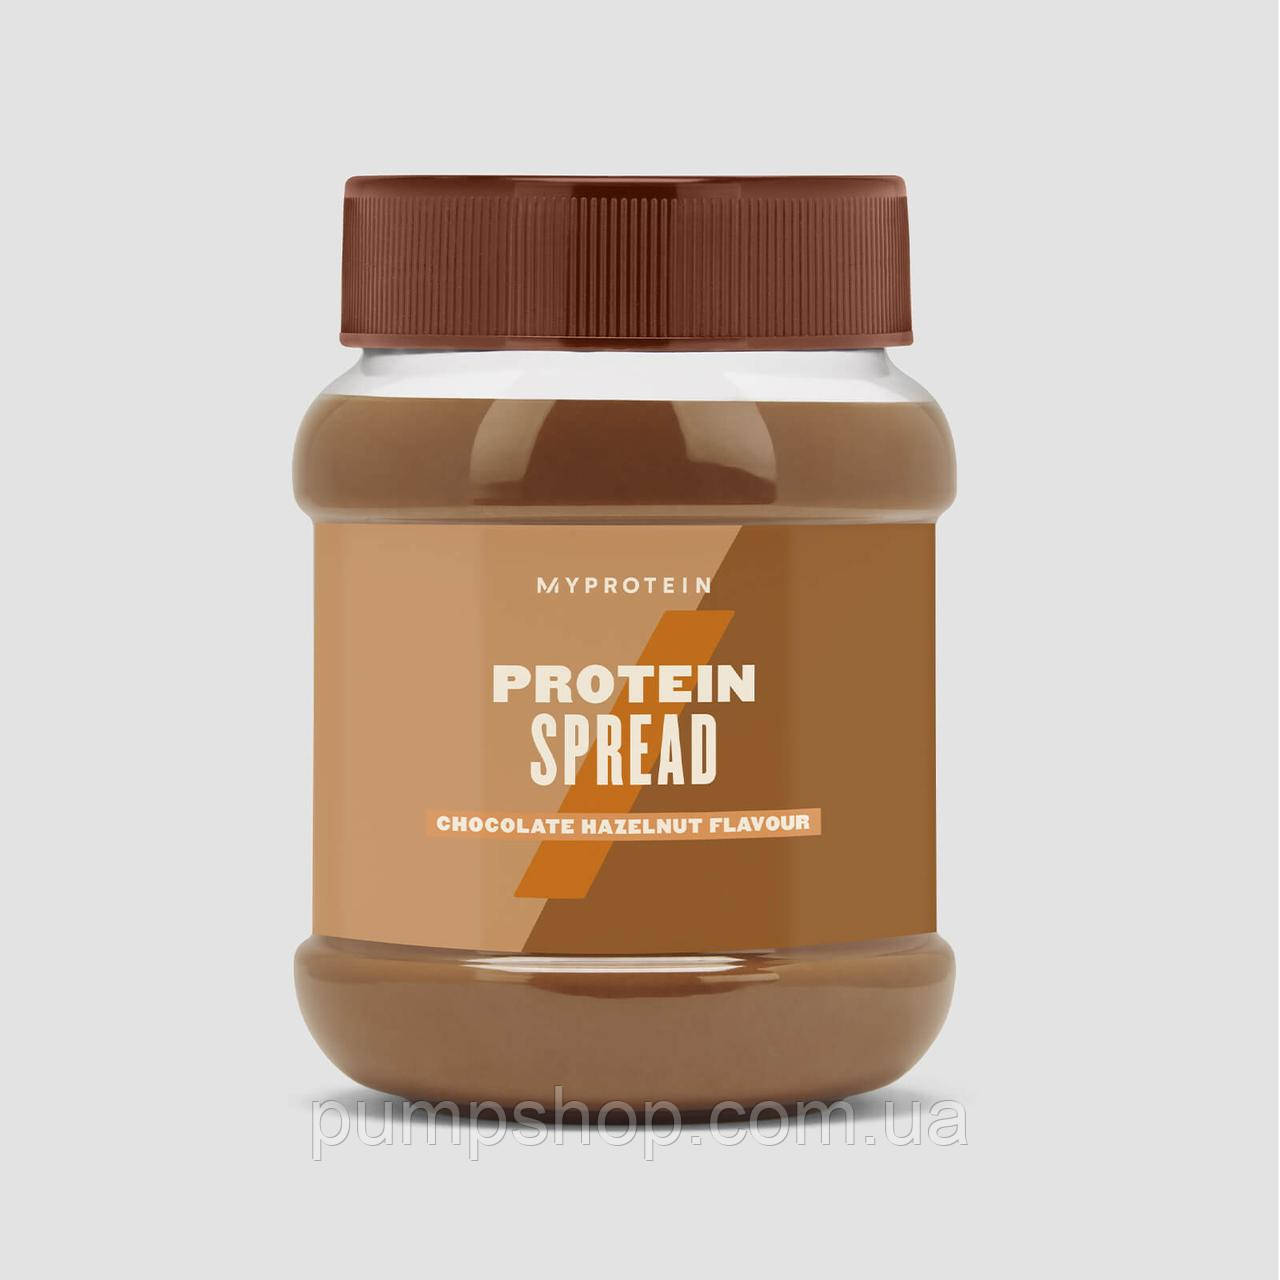 Протеиновый спред MyProtein Protein Spread 360 г молочный шоколадНет в наличии